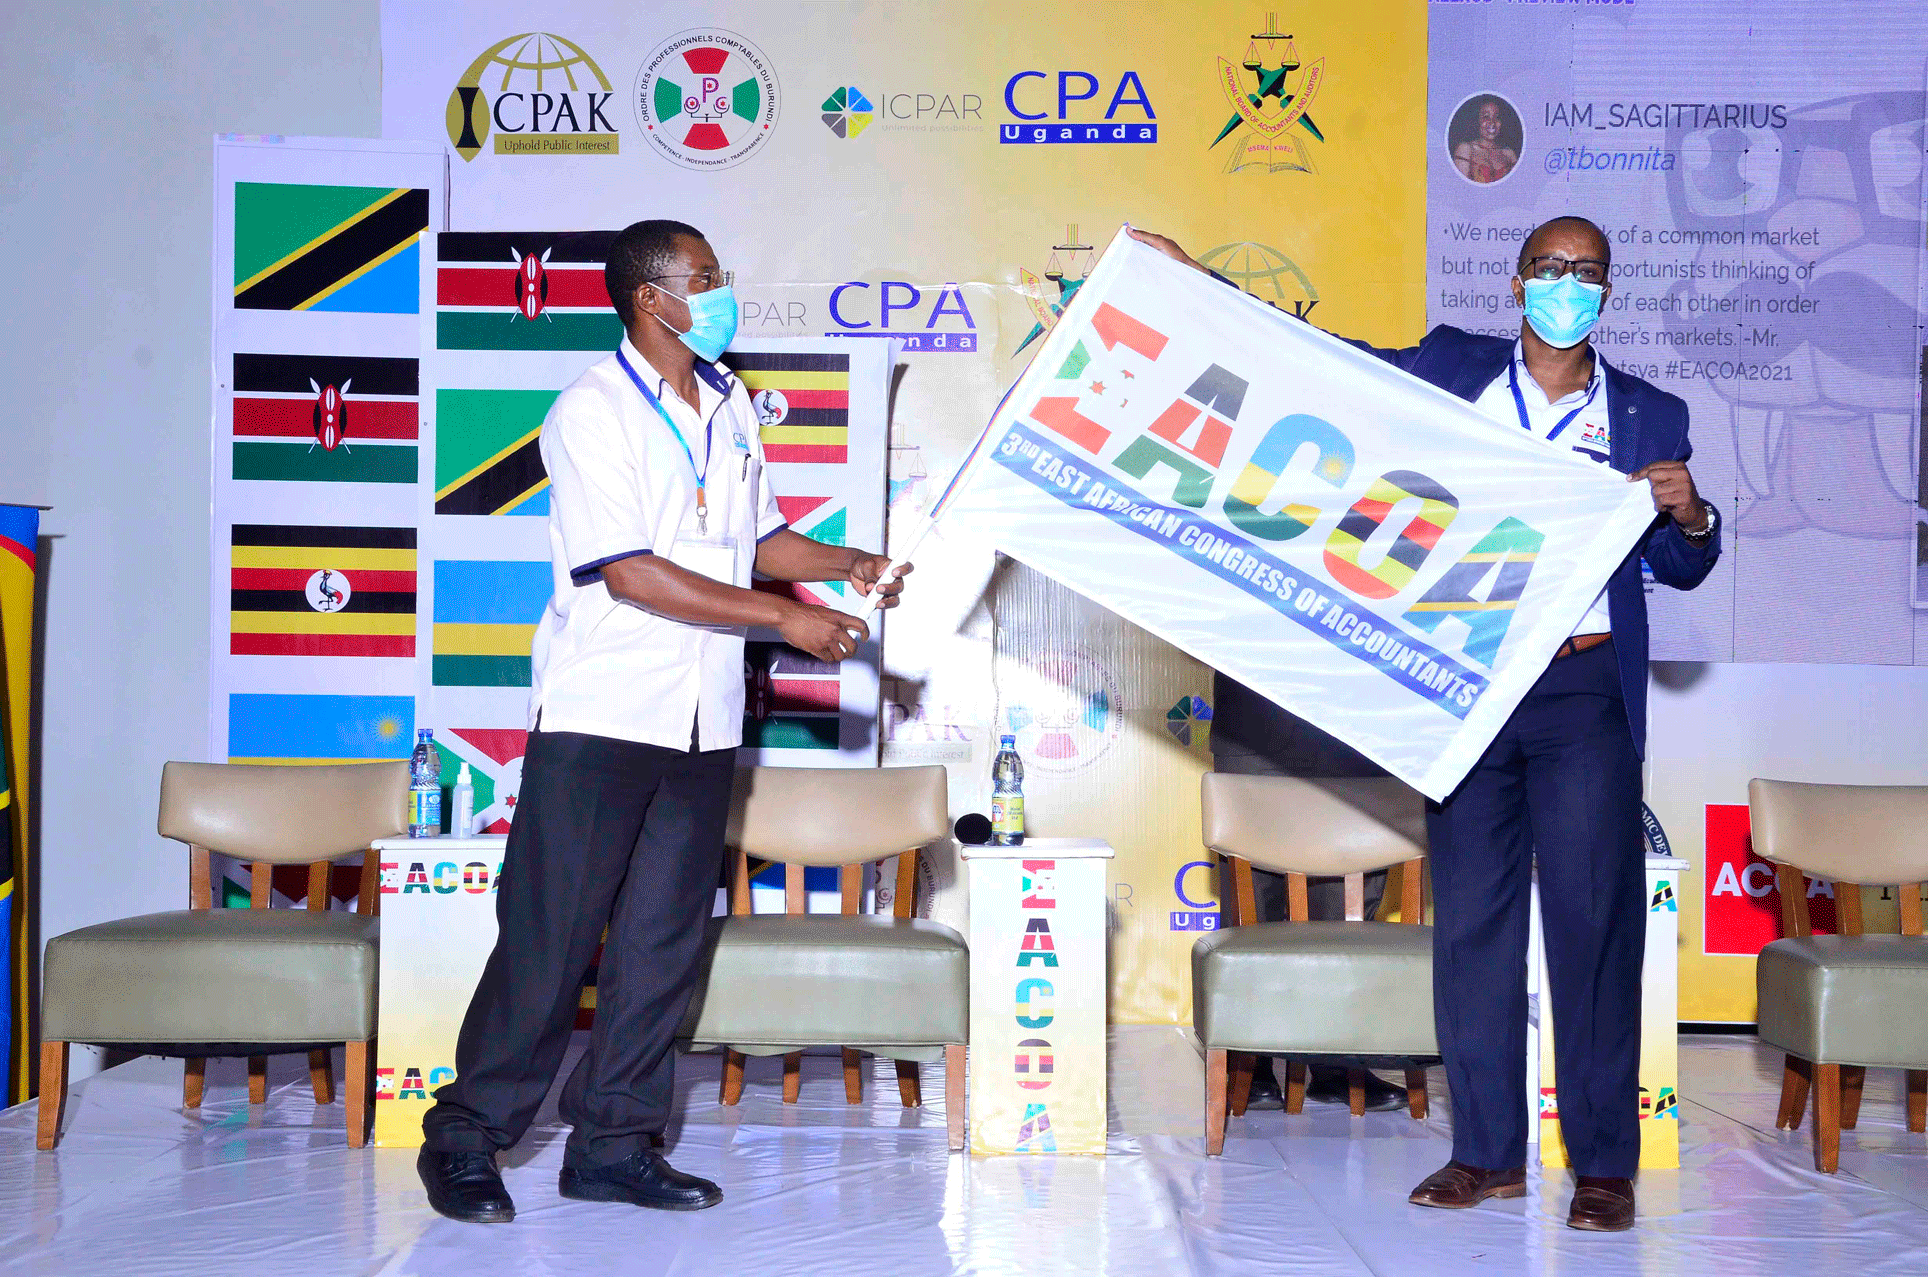 CPA Derick Nkajja hands over an EACOA flag to Mr. Ssali of ICPAR - the next EACOA organisers